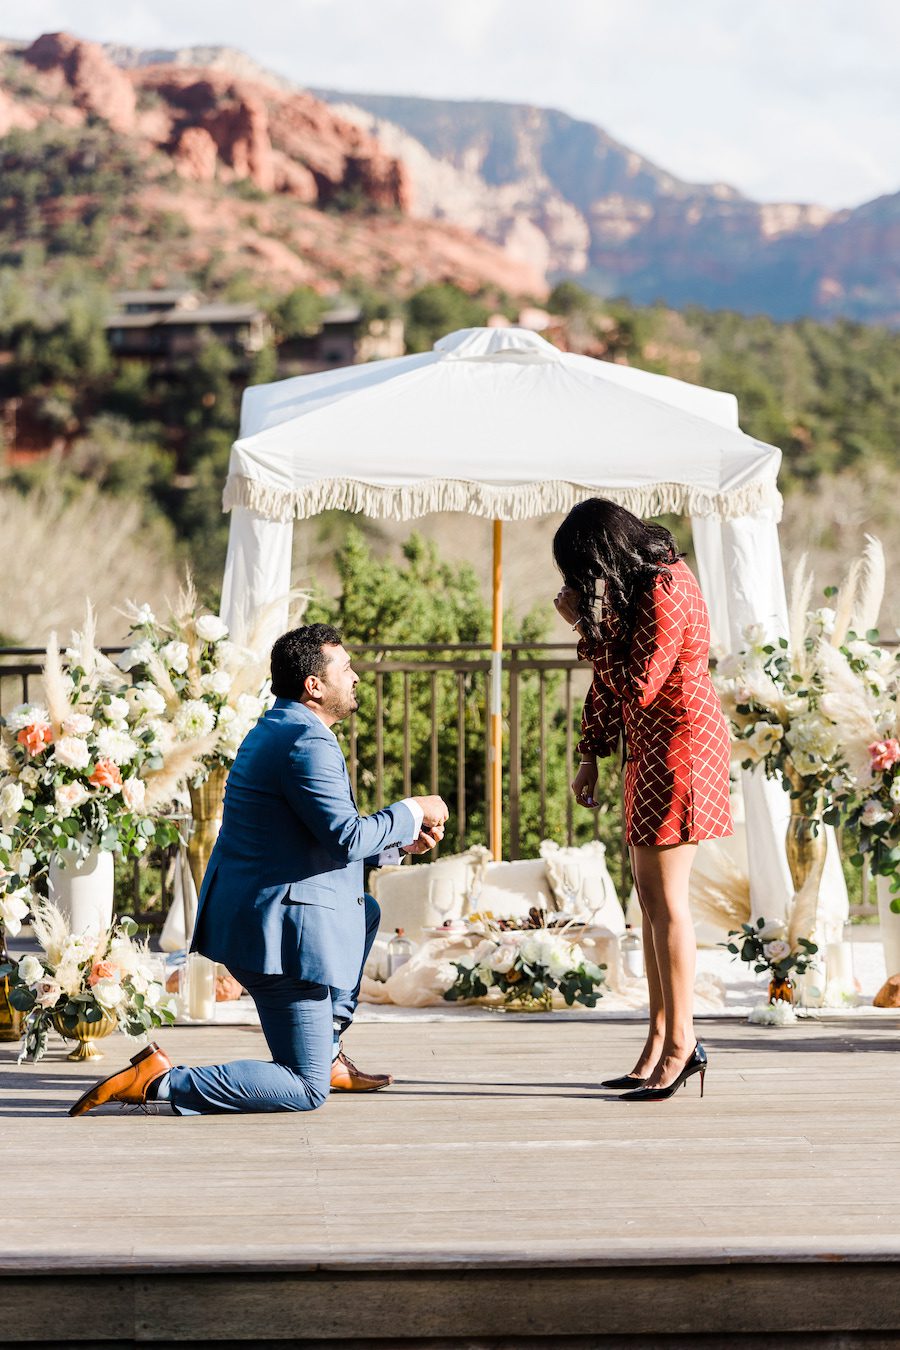 Magical Sedona Arizona picnic proposal set up